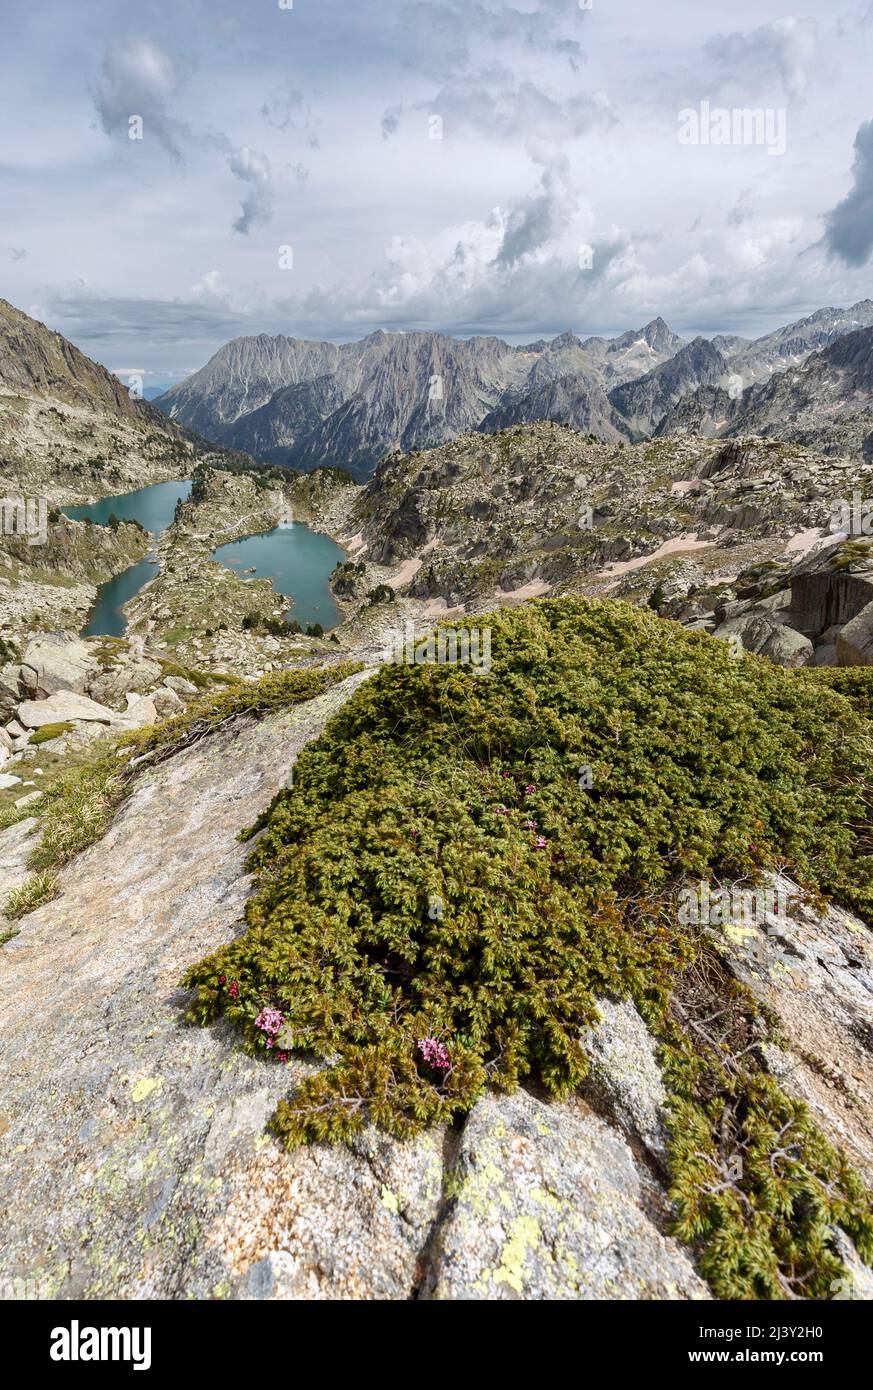 Munyidera and Barbs lakes, Aiguestortes national park, Pyrenees, Spain Stock Photo